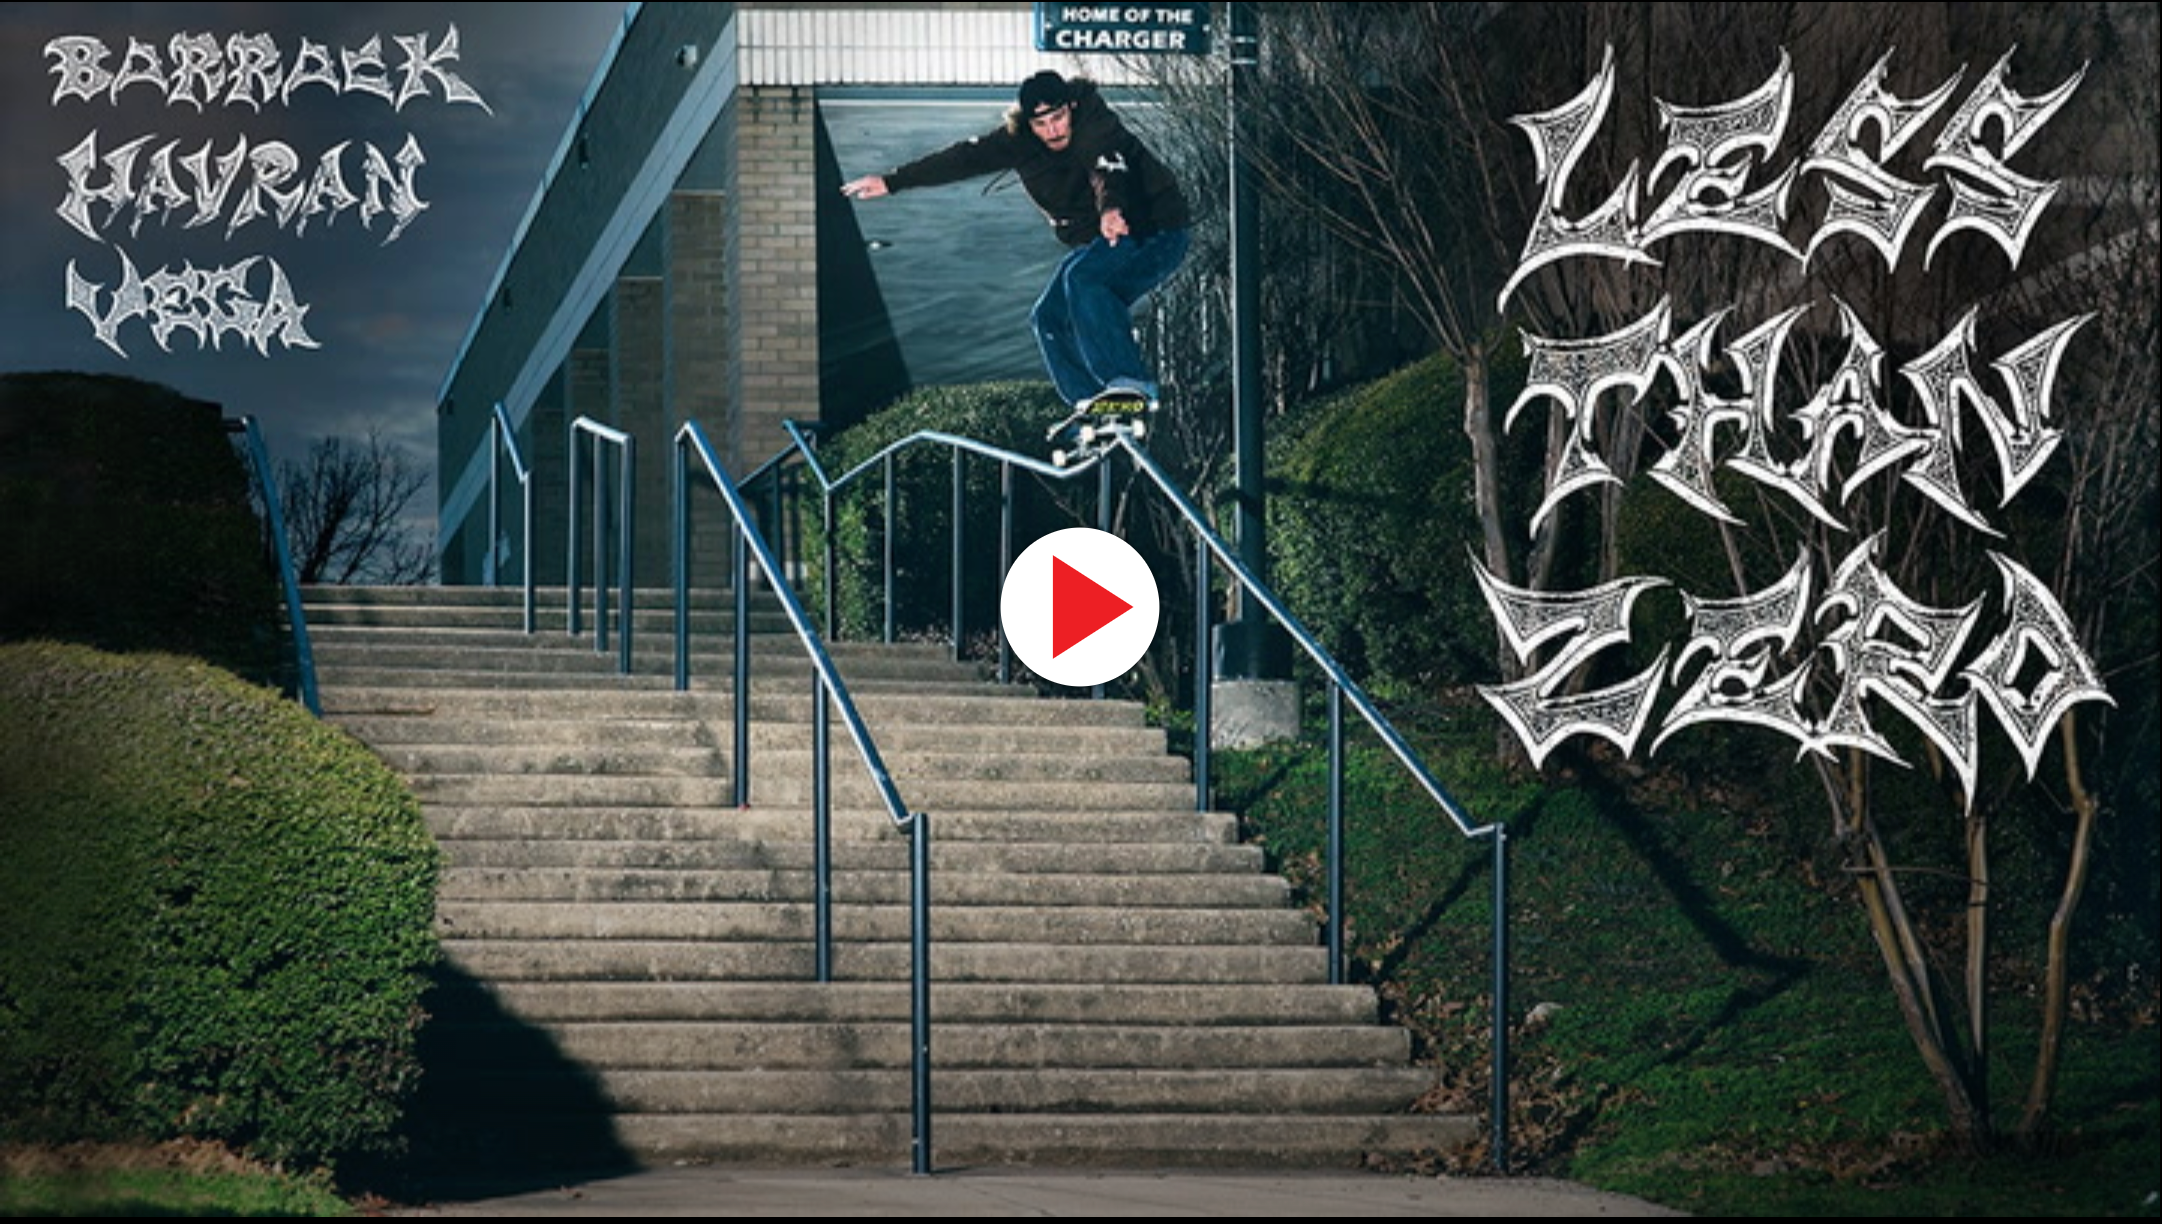 Zero Skateboards "Less Than Zero" video